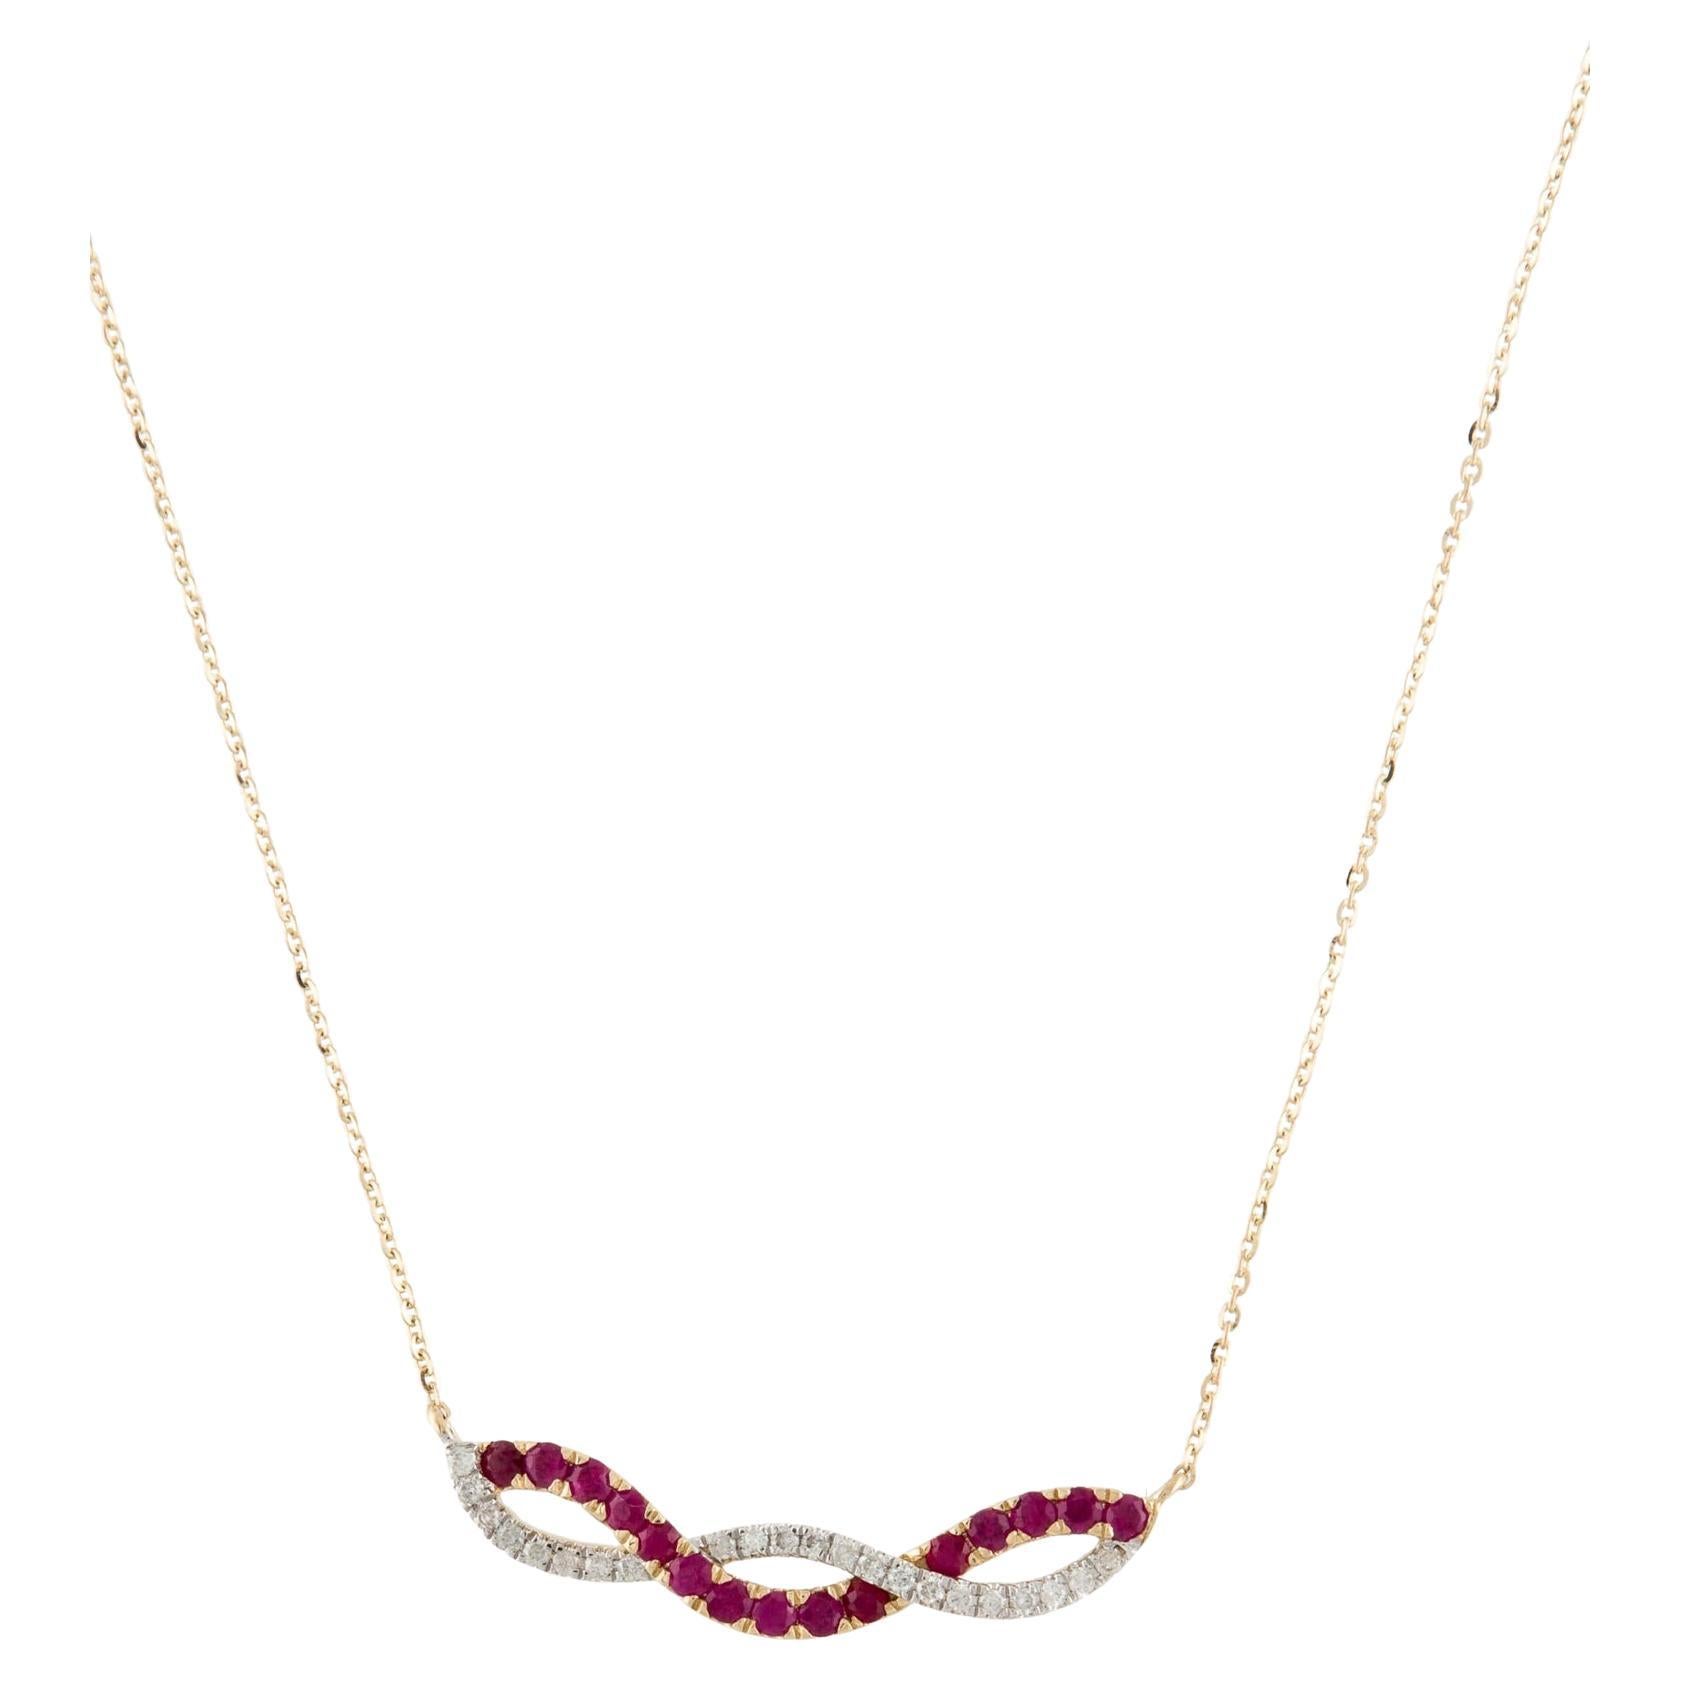 Collier pendentif de luxe en rubis et diamants 14 carats, pierre précieuse élégante, bijou de fantaisie